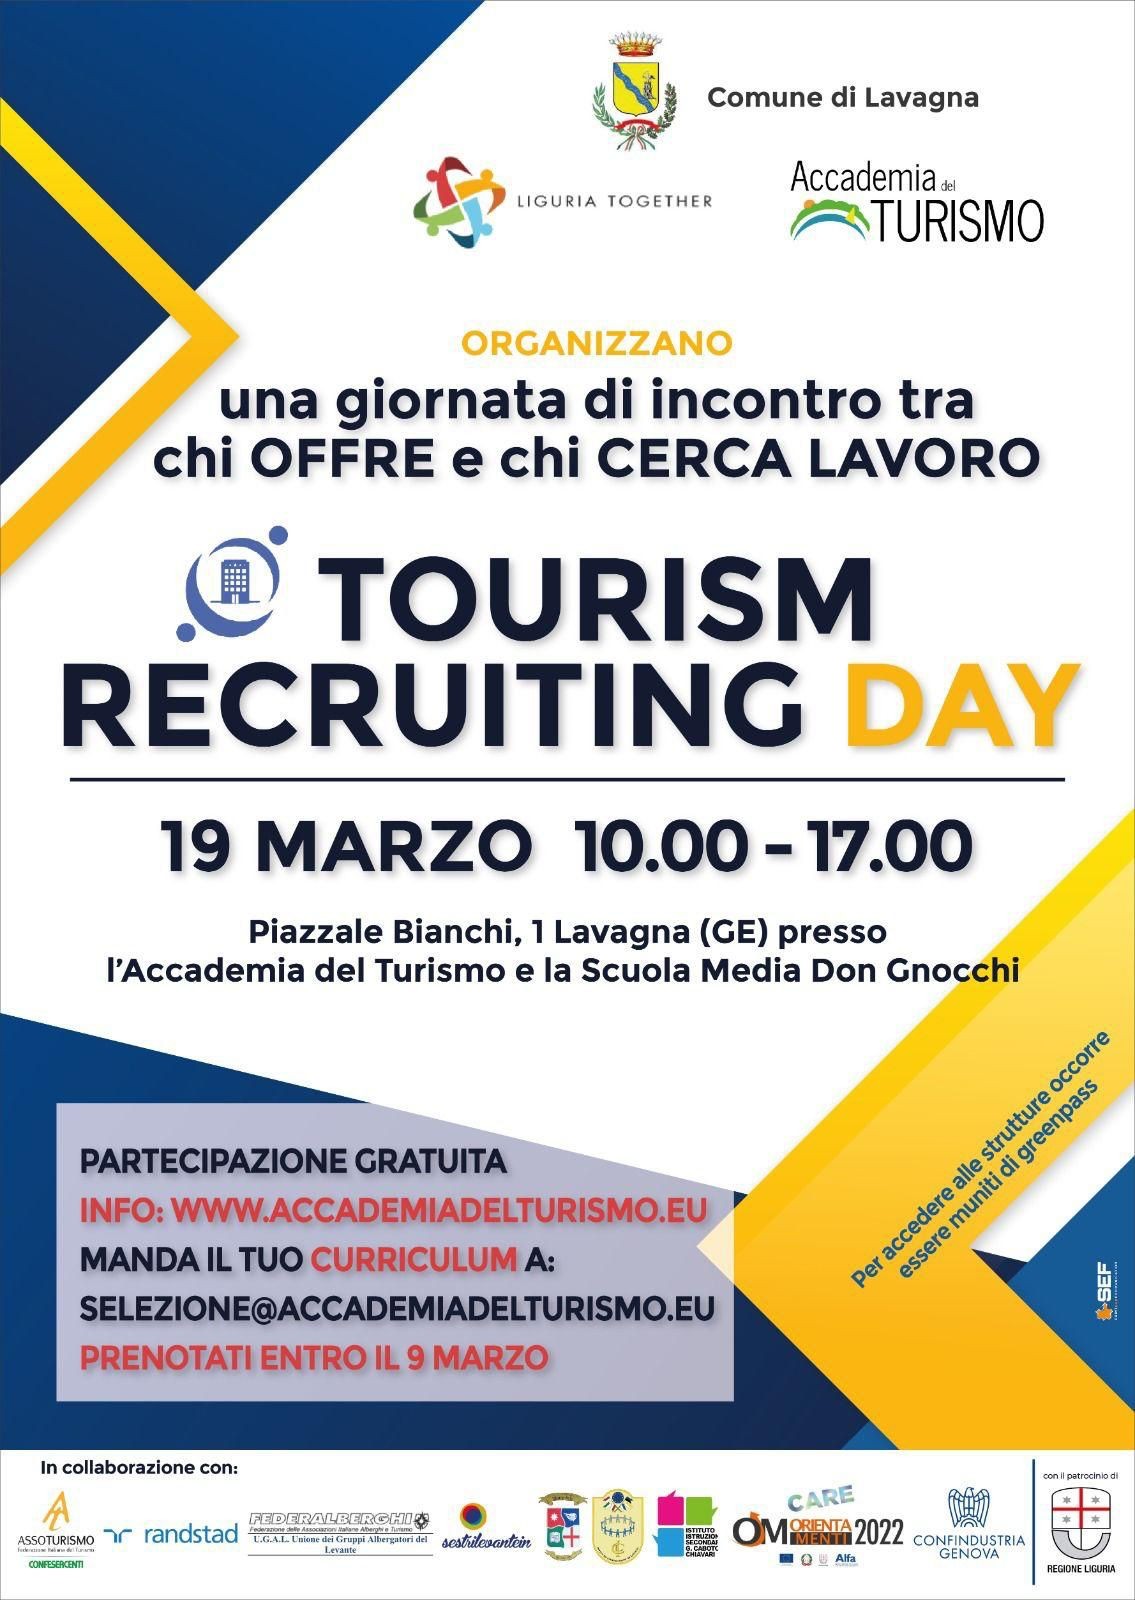 Comune di Portofino - 19 Marzo - Tourism Recruiting Day